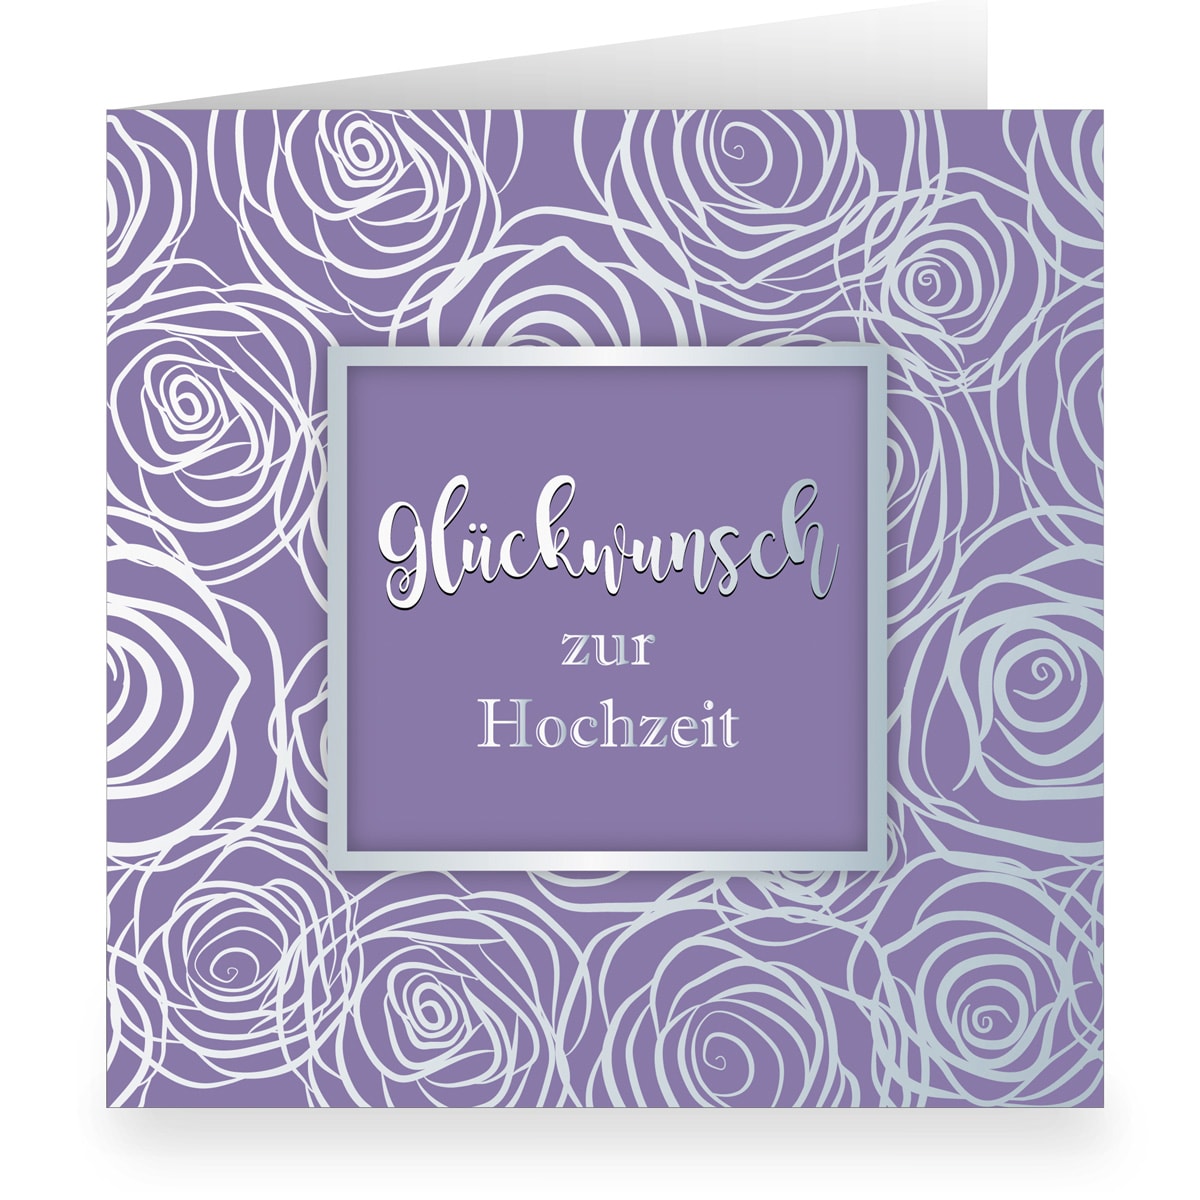 Kartenkaufrausch: Lila Hochzeitskarte mit Rosen aus unserer Hochzeits Papeterie in lila